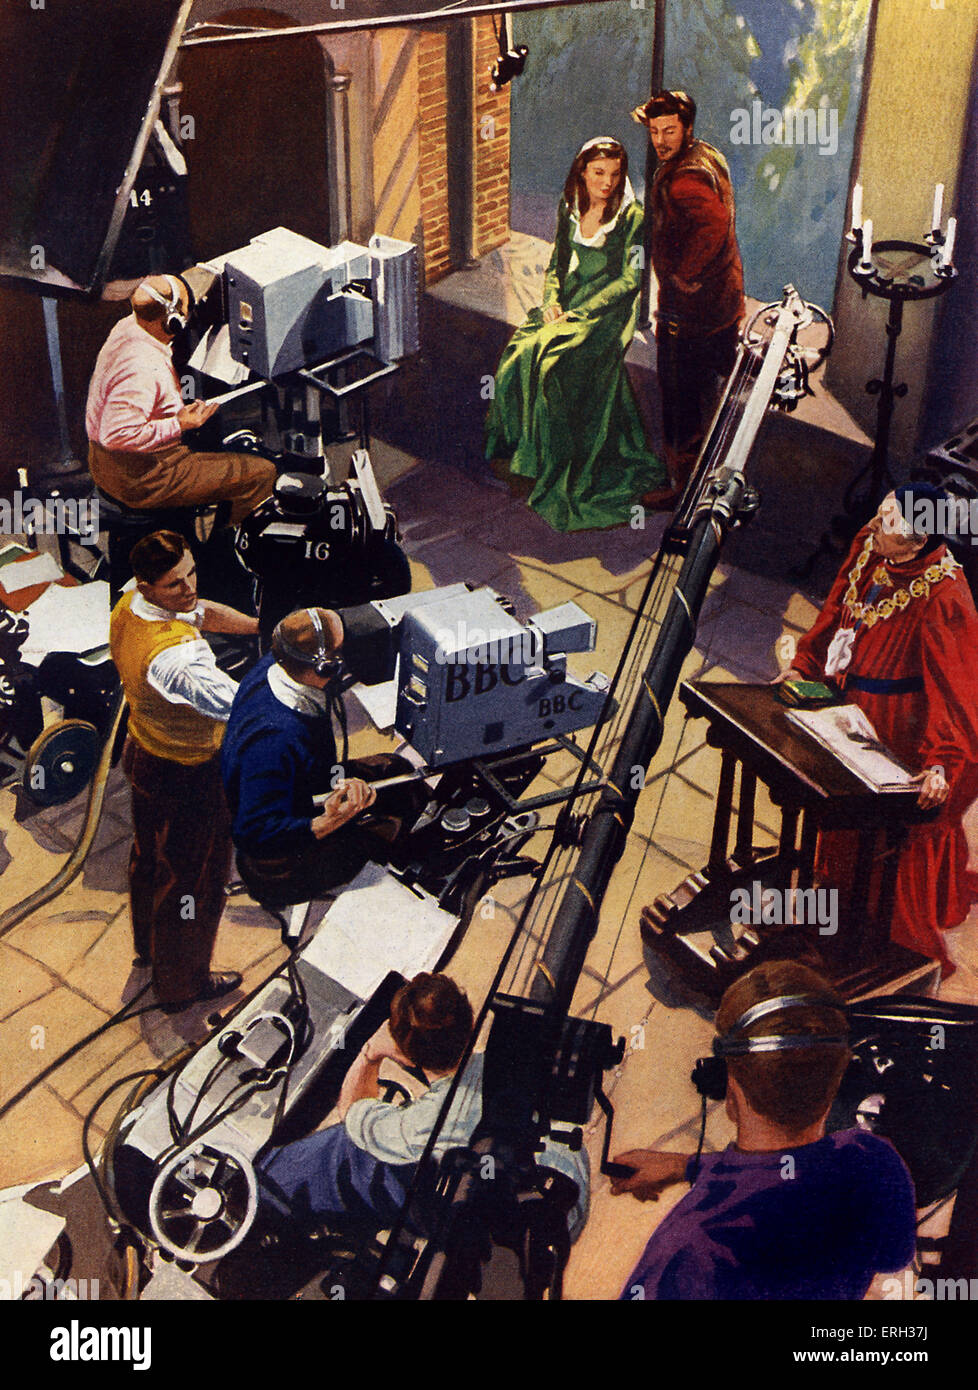 BBC TV-Studio, Anfang der 1950er Jahre. Kamerateam, Boom Mikrofone, Schauspieler in Shakespeare-Drama.  Illustration von unbekannt Stockfoto